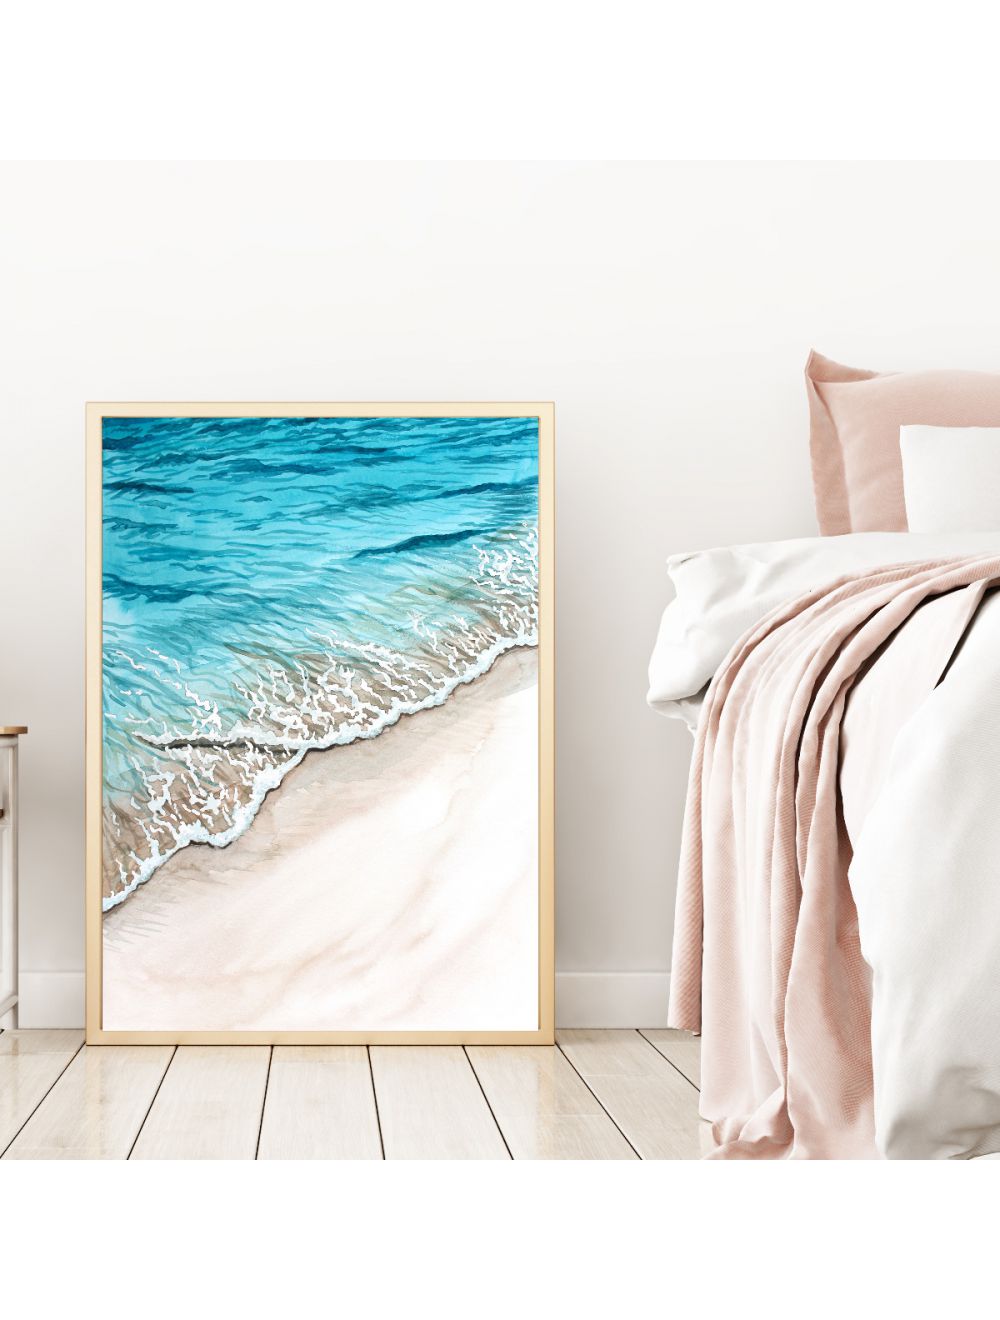 Kunstdruck Wandbild A3 Wellen Strand Küste Poster Meer Plakat Print oder A4 p157 Aquarell